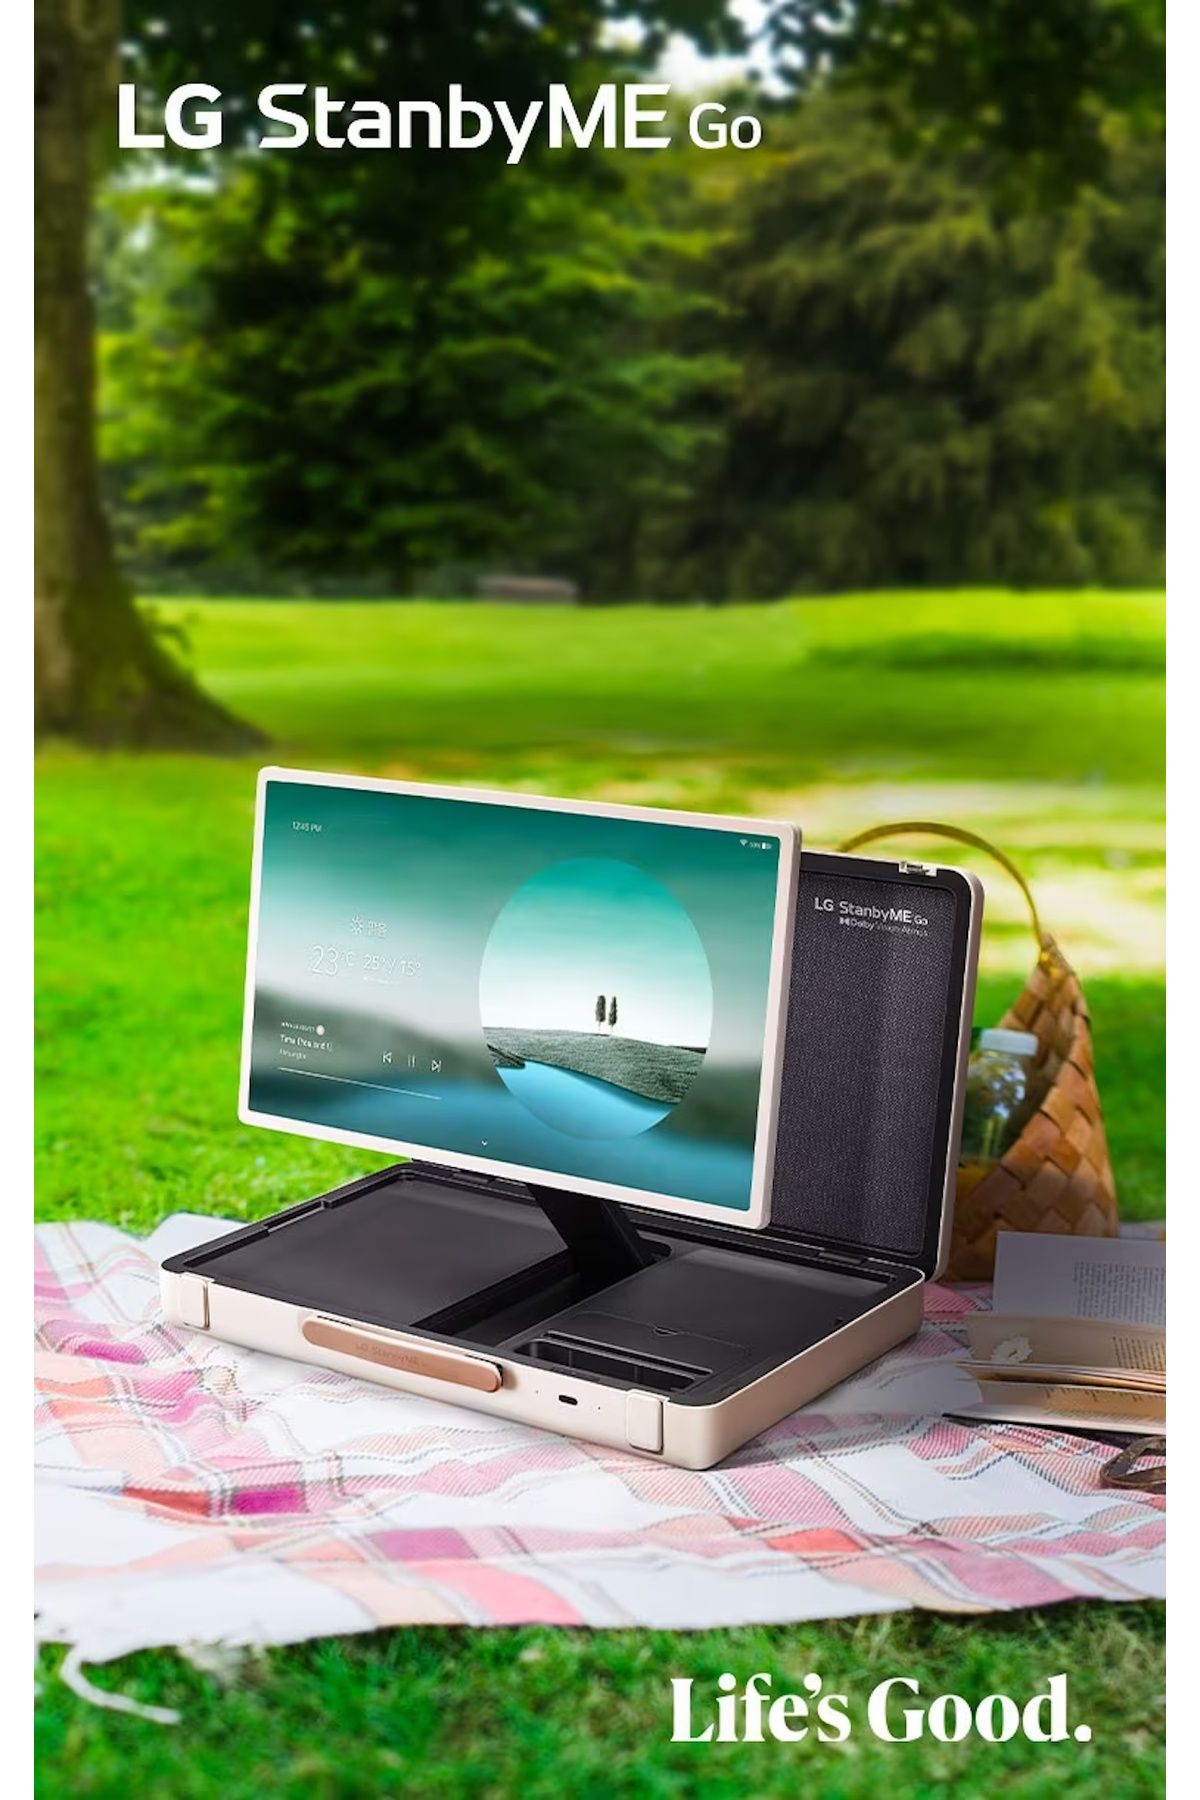 LG StanbyME Go 27" Evrak Çantası Tasarımı TV Dokunmatik Ekran | Taşınabilir ve Kablosuz | Dahili Pil